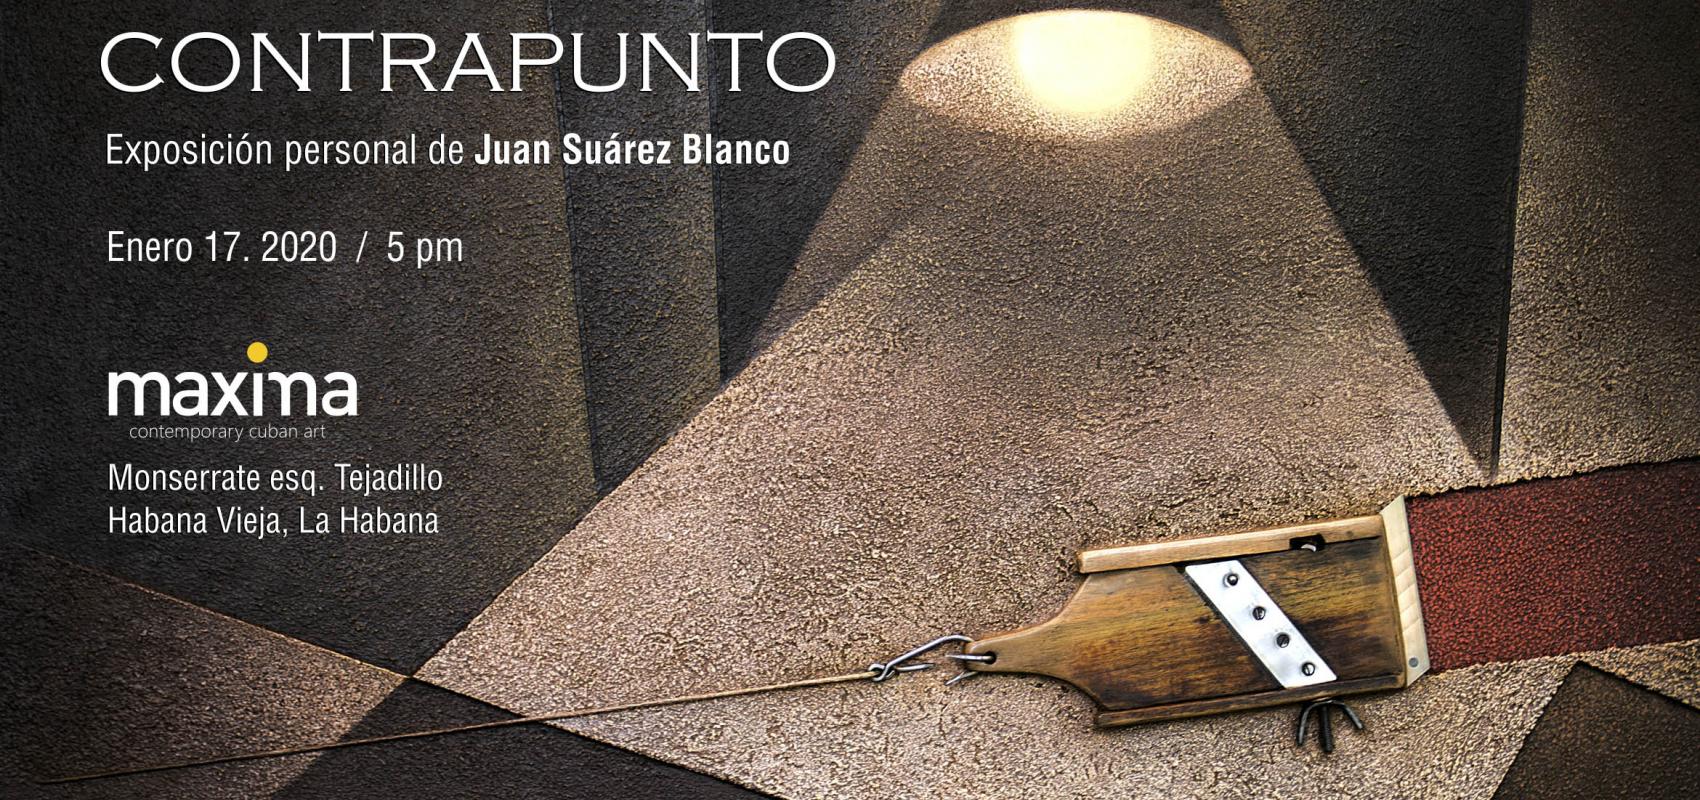 Contrapunto-exposición-Juan Suárez Blanco-Máxima Gallery-2020